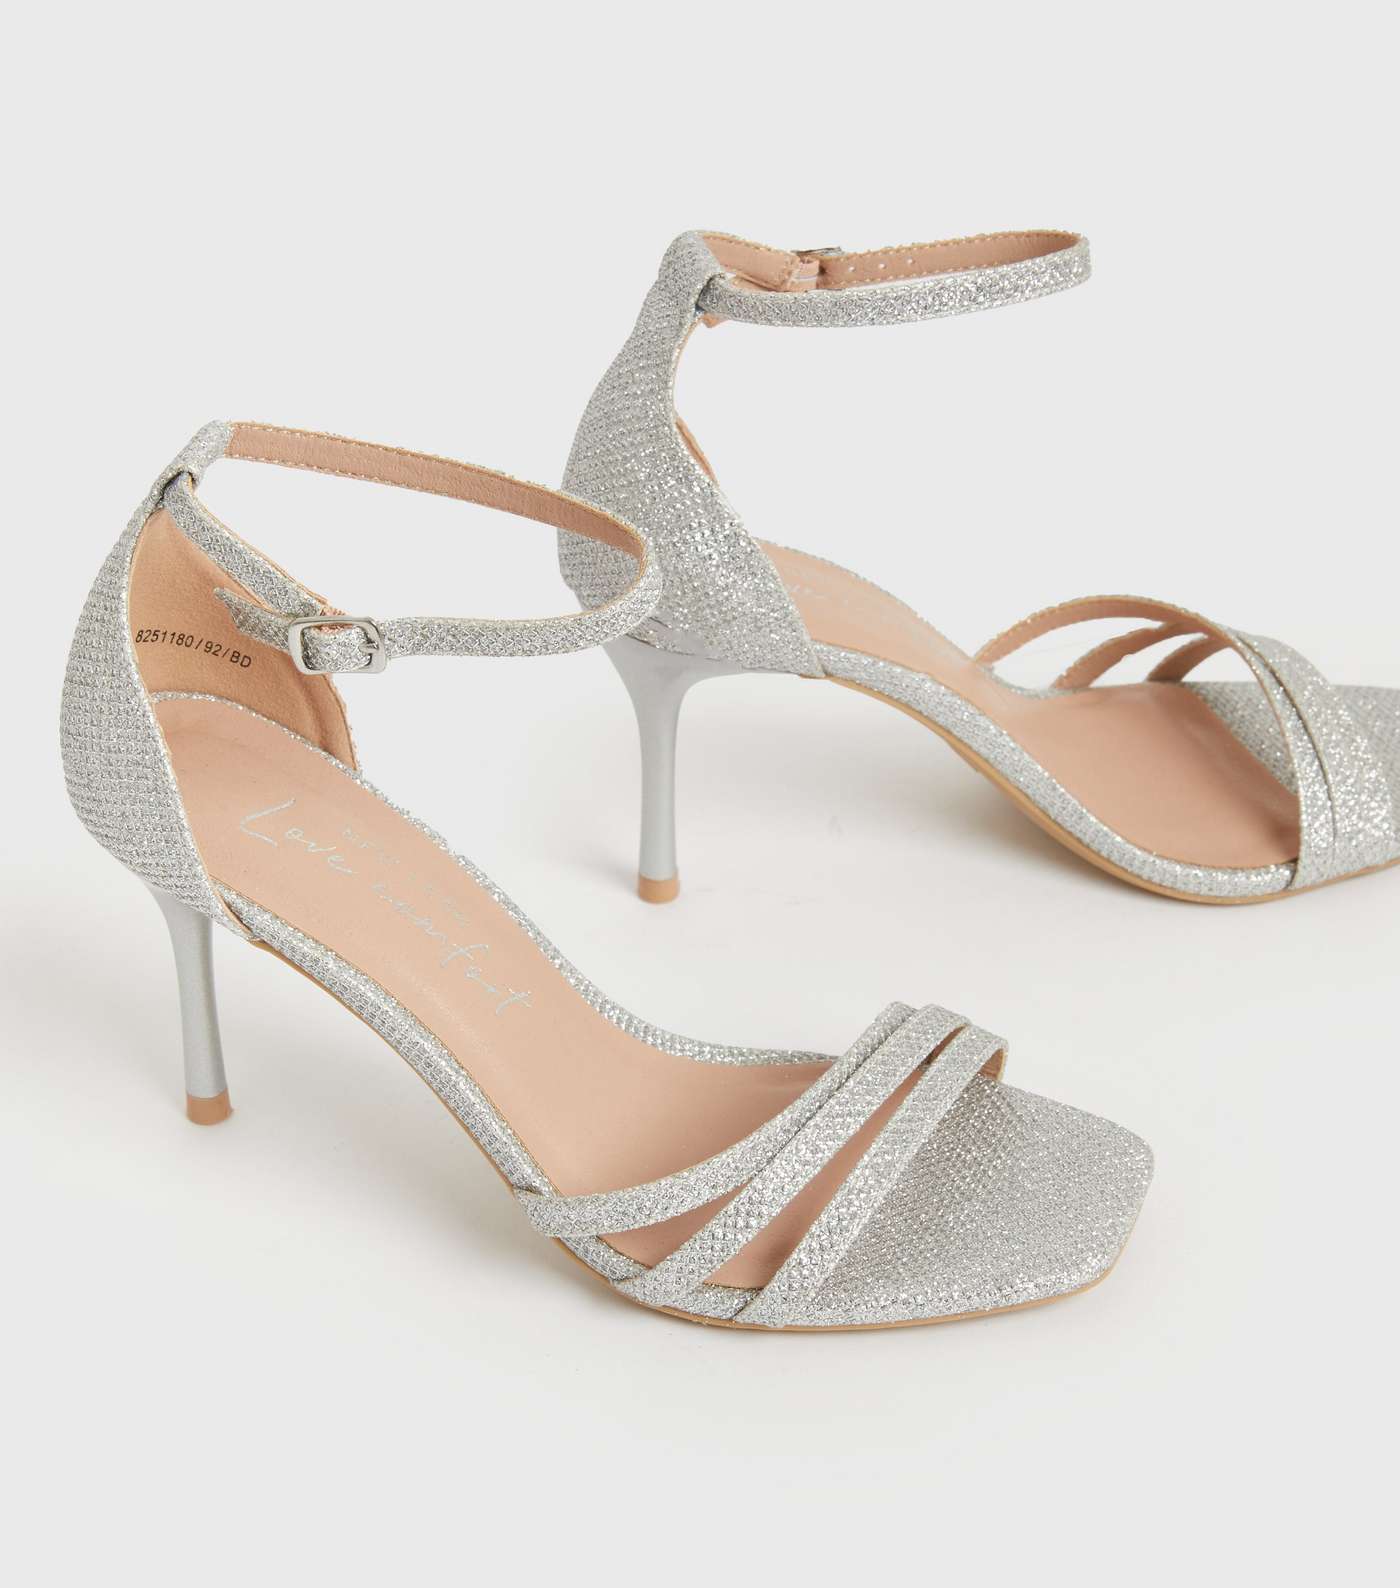 Silver Glitter Asymmetric Strappy Stiletto Heel Sandals Image 3